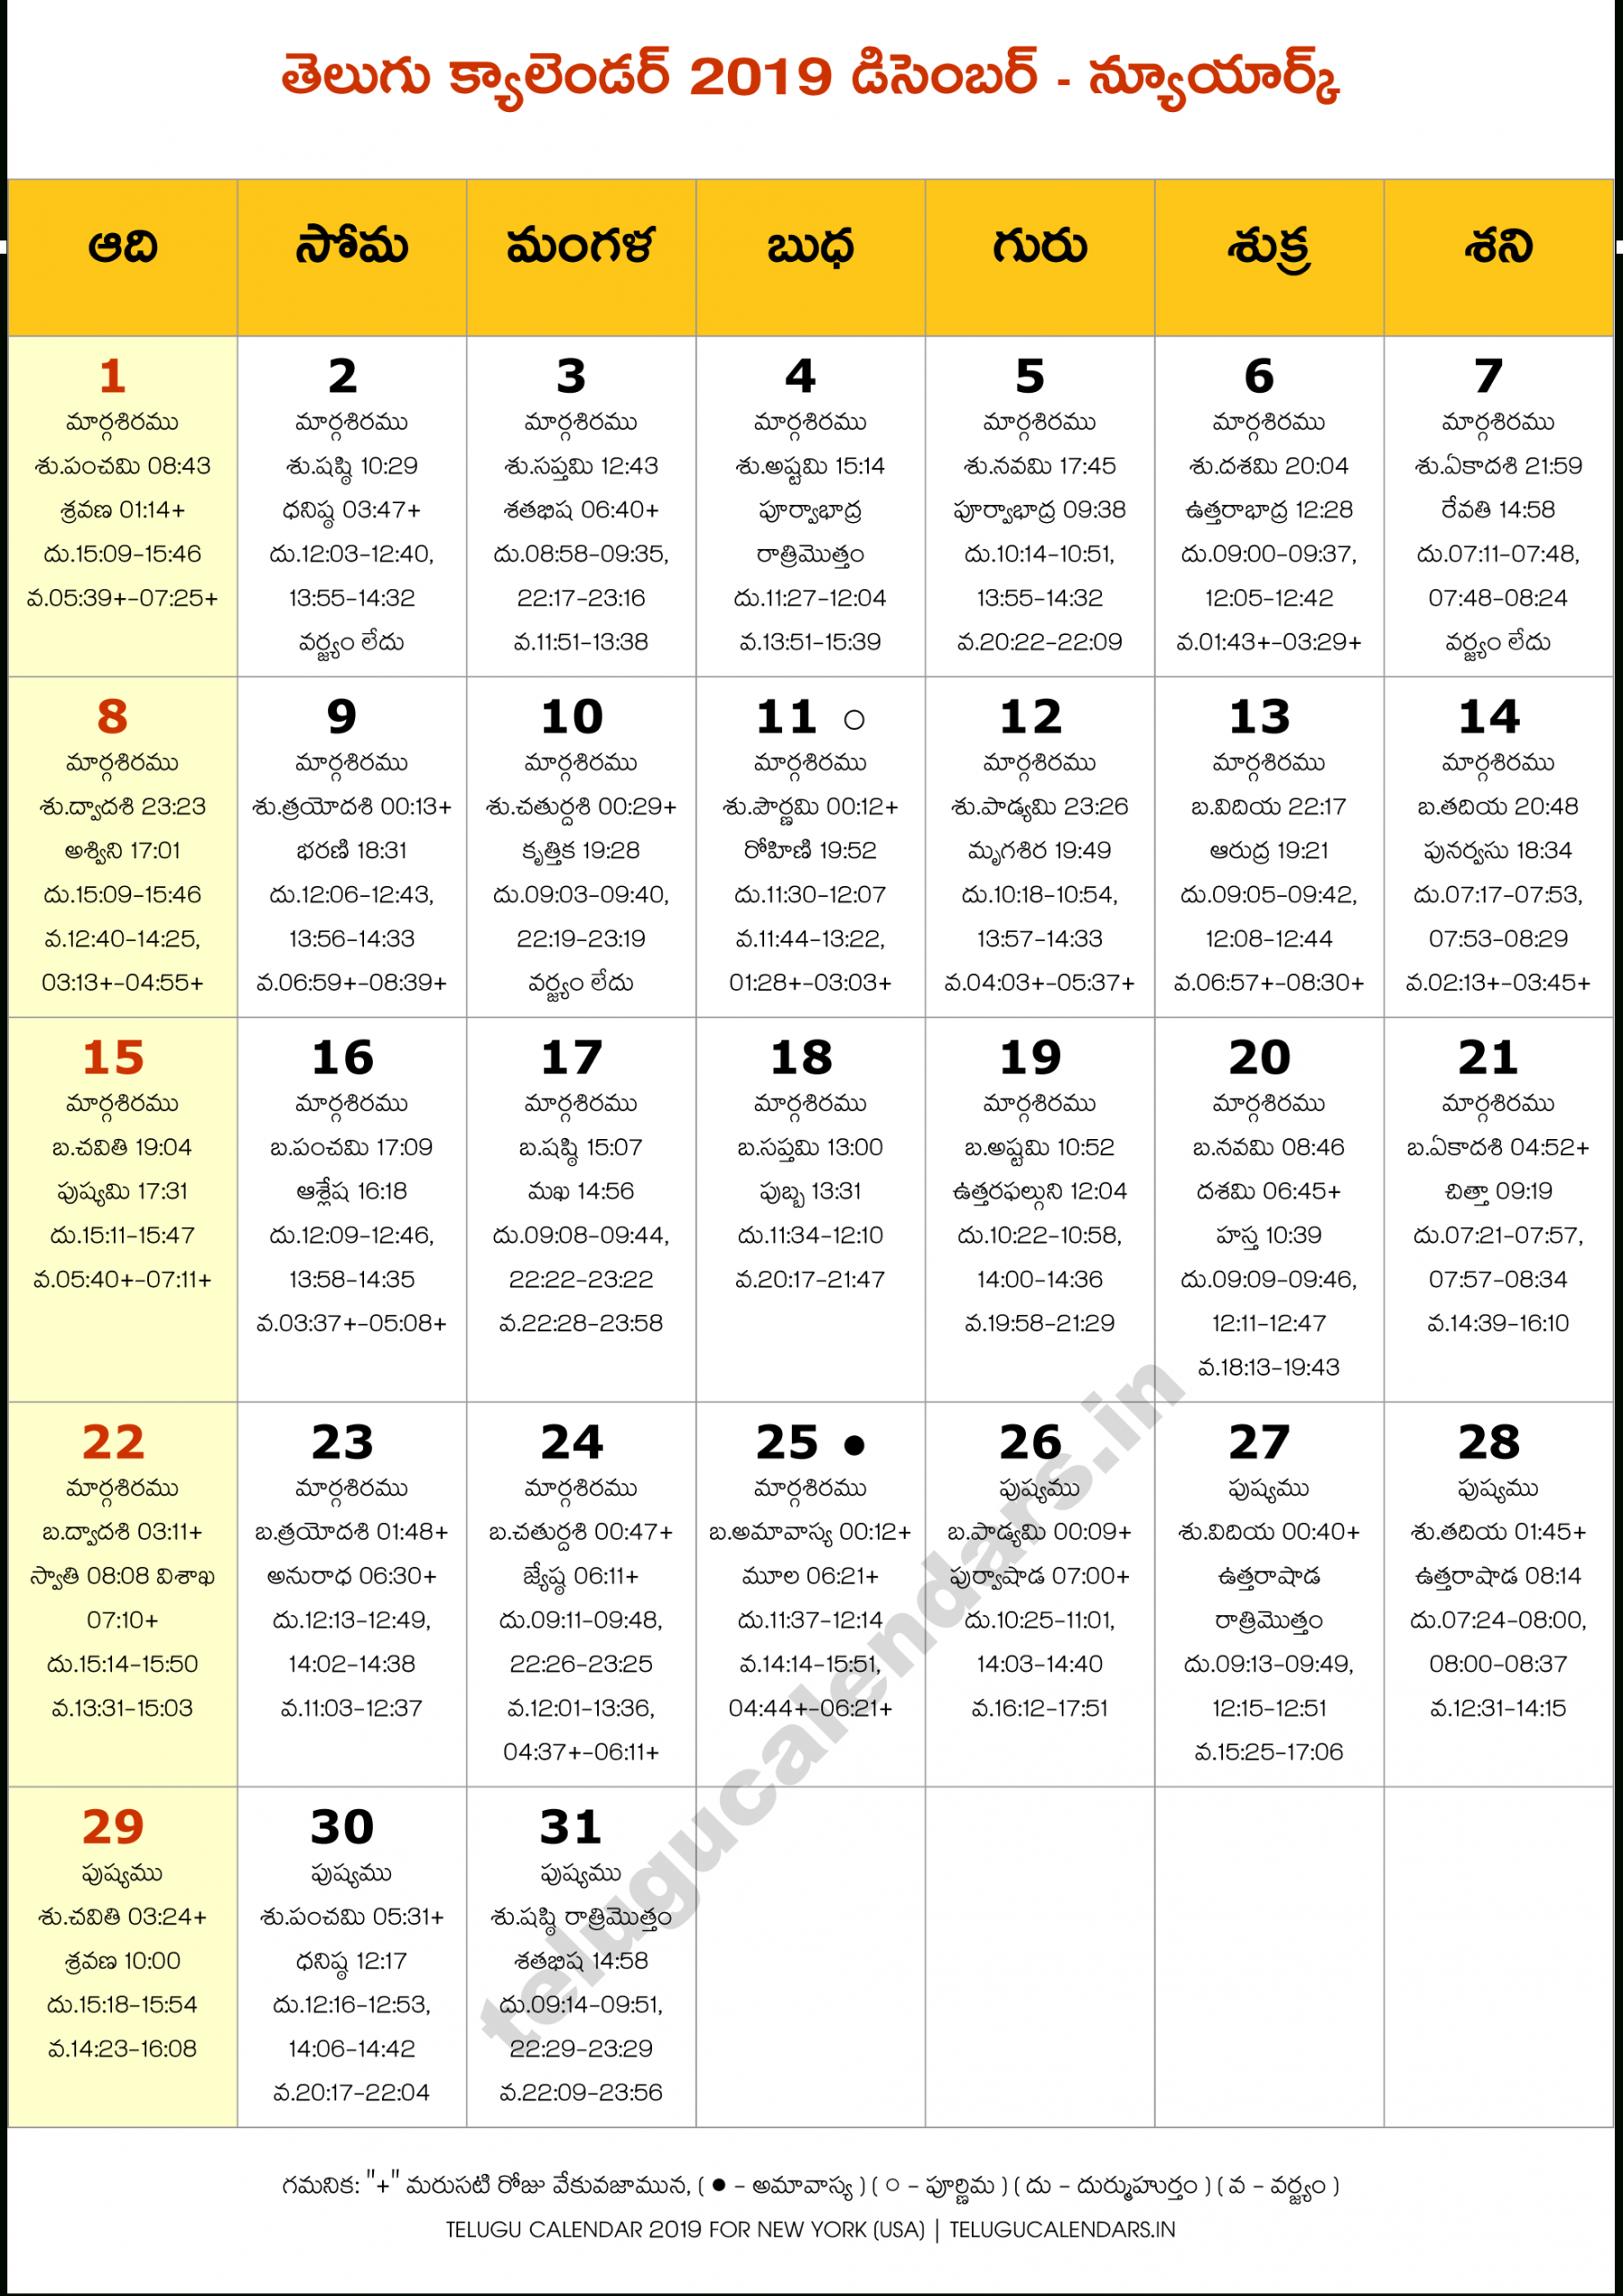 Telugu Calendar 2022 New York - February Calendar 2022